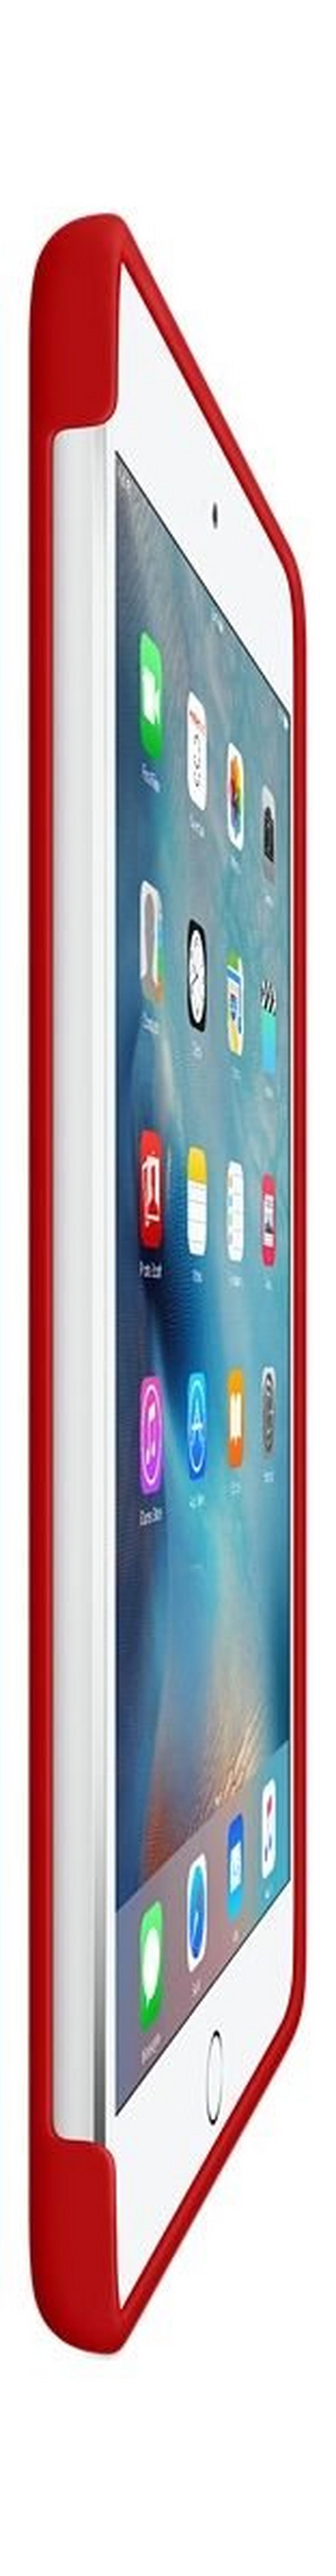 Apple iPad Mini 4 Silicone Case (MKLN2ZM/A) - Red